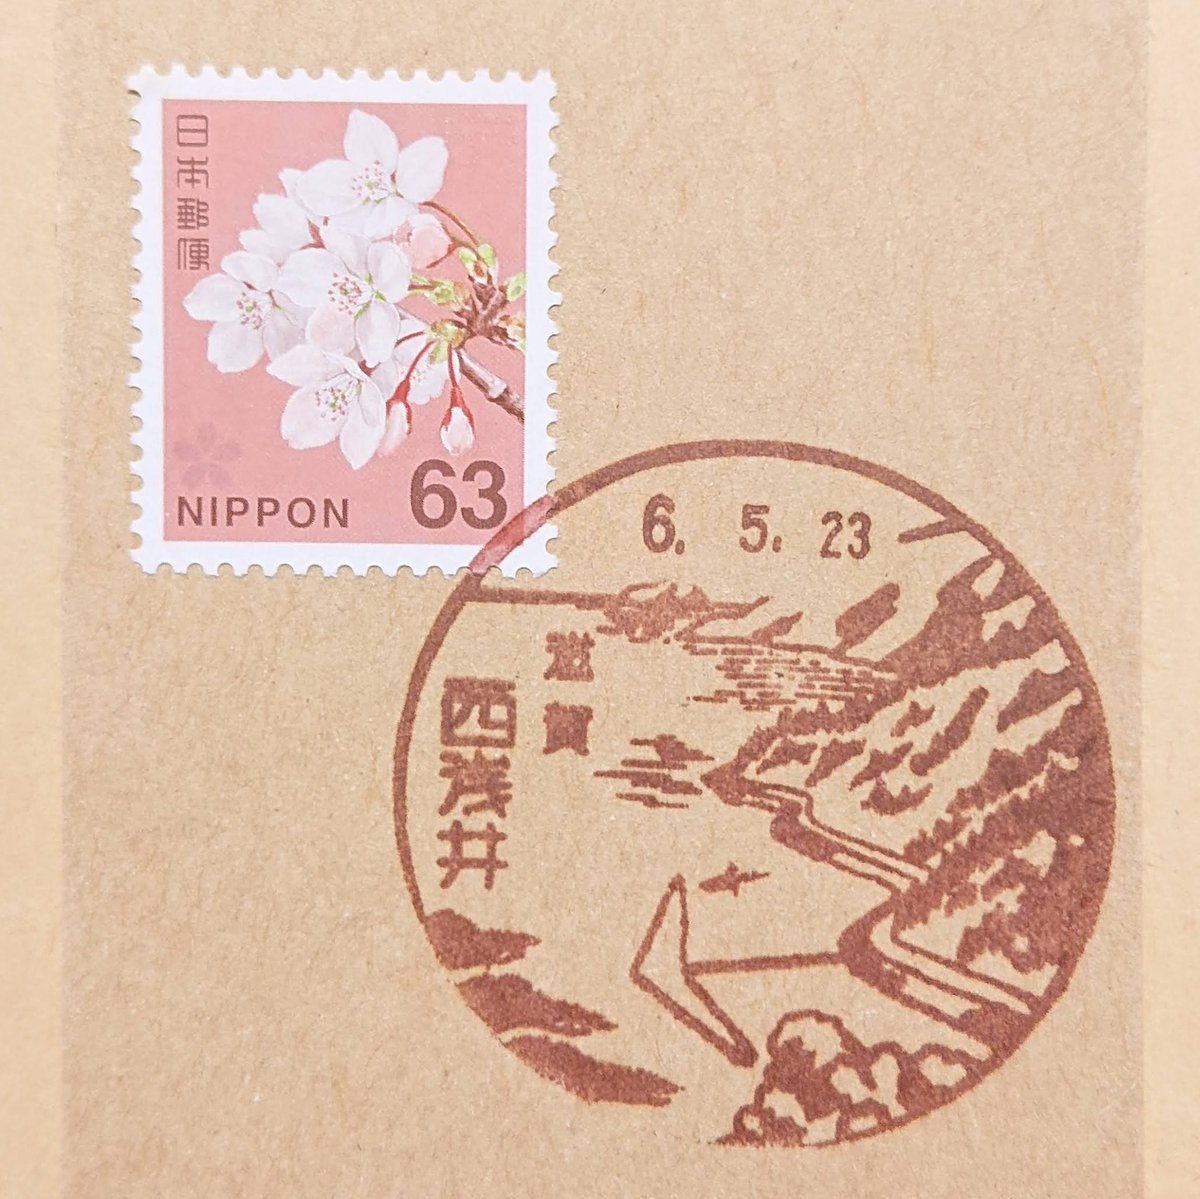 風景印郵頼✉181

西浅井郵便局🏣
奥琵琶湖の風景、竹生島。この風景印は2024年5月31日をもって廃止いたします。

#風景印